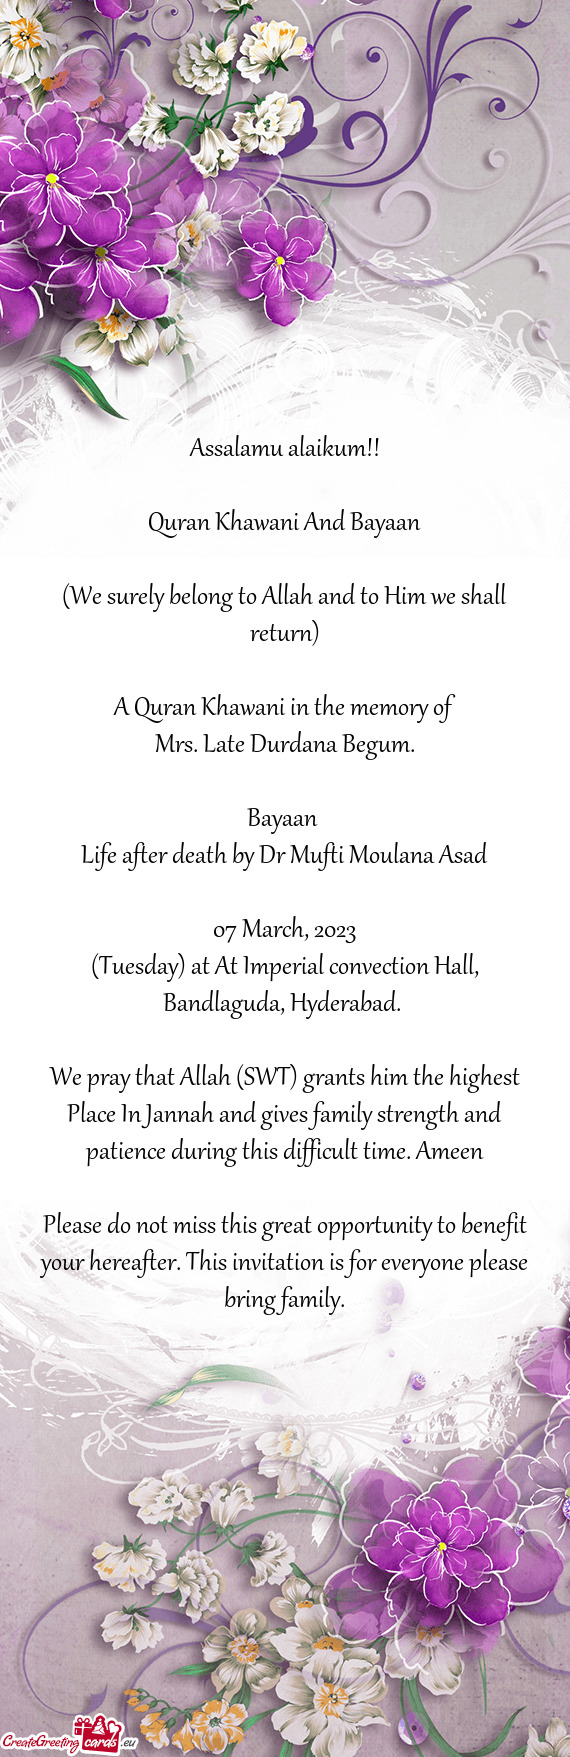 A Quran Khawani in the memory of